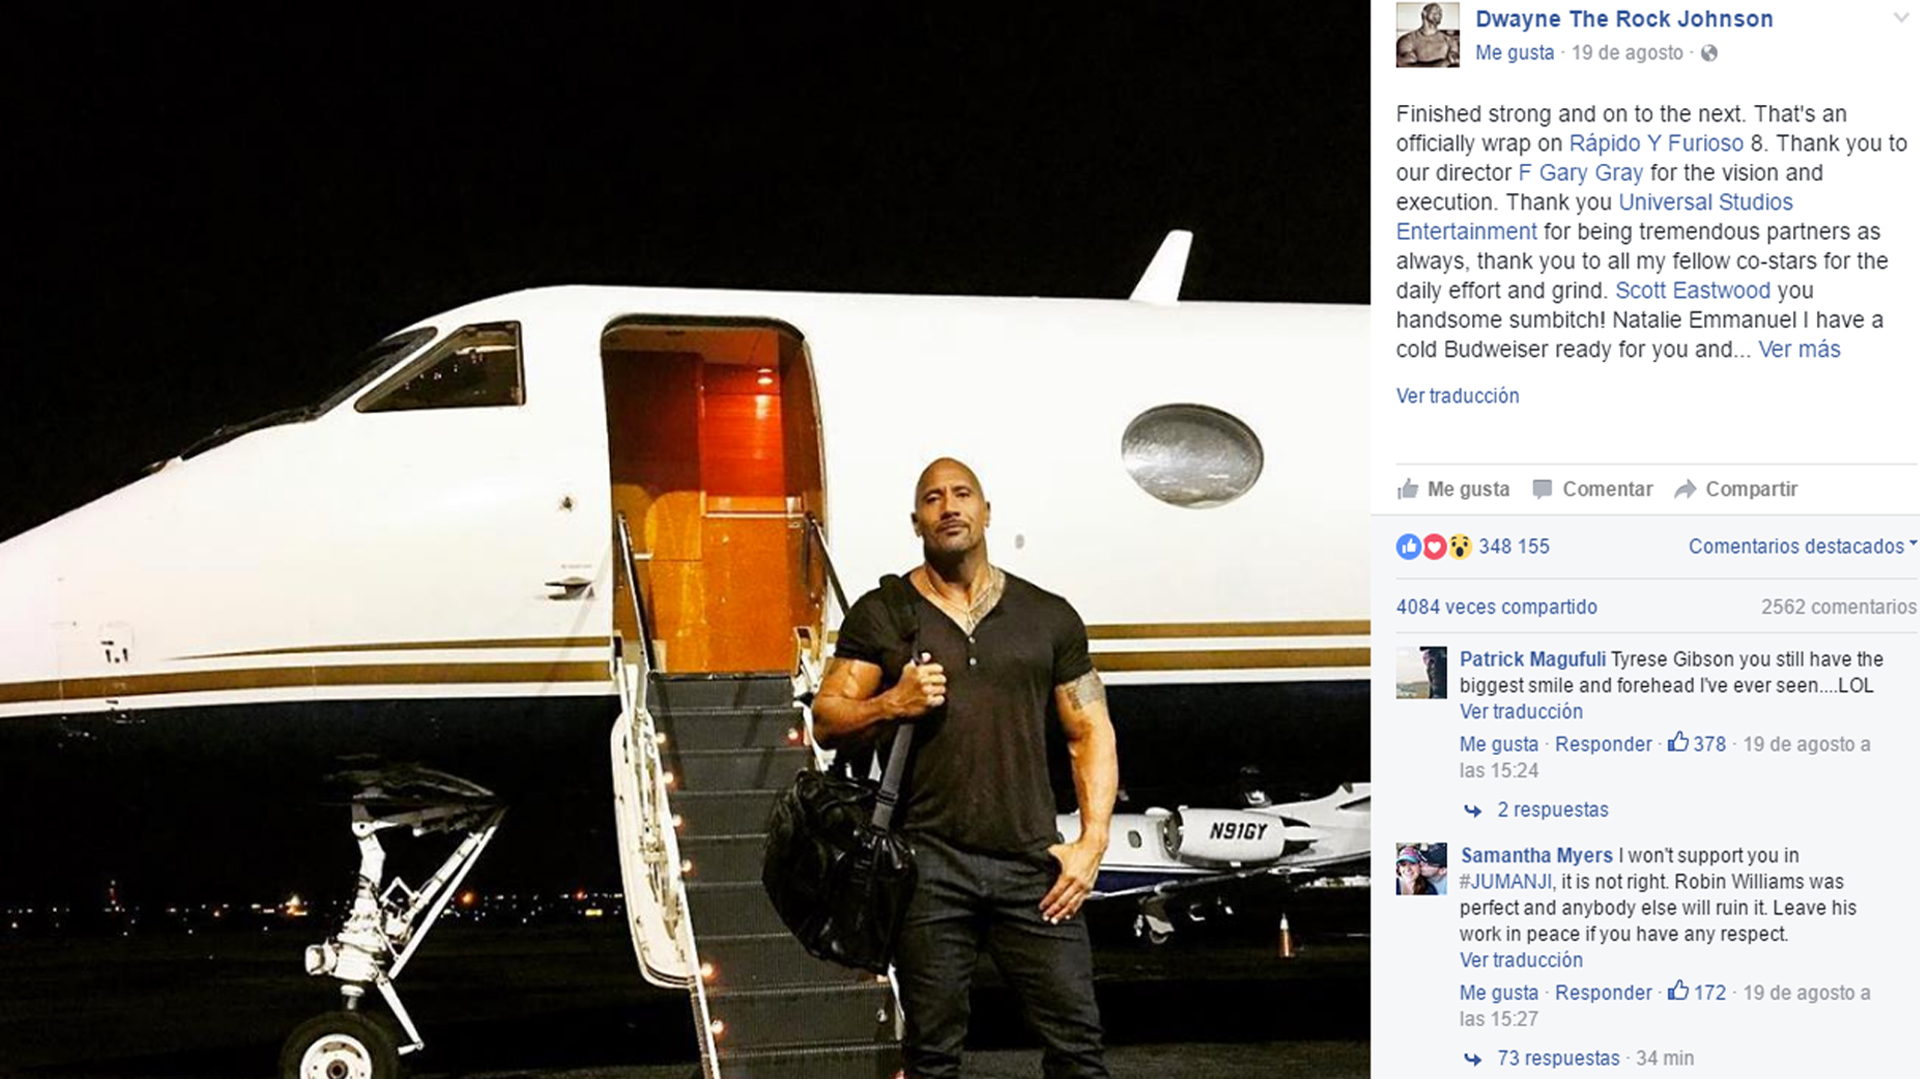 Mensaje de agradecimiento de Dwayne Johnson a la producción de "Rápidos y Furiosos sin control", en la que al parecer no tuvo en cuenta a su colega Vin Diesel. Captura de pantalla Facebook.